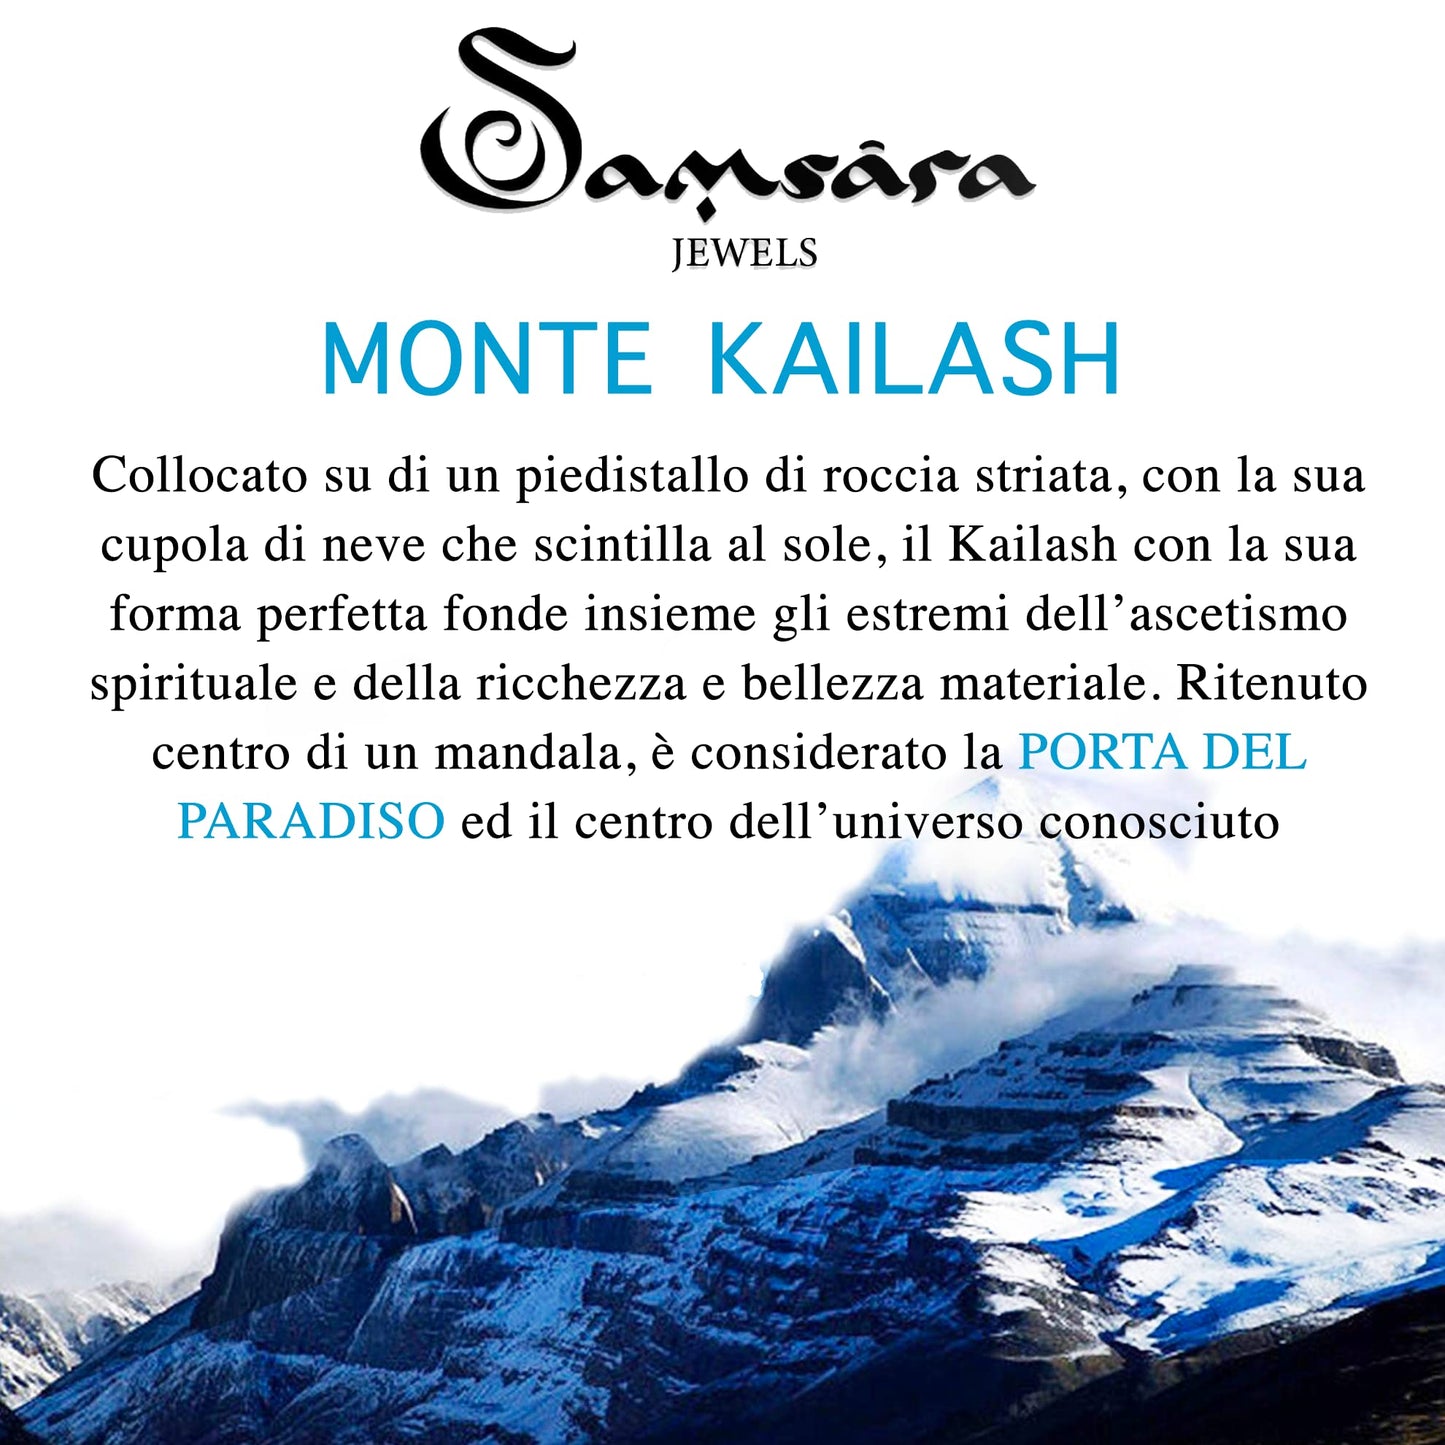 Bracciale Kailash Tibetano Buddista - Bracciale Spirituale Con Agata Fossile - Filo in cotone cerato Bianco - SamsaraFragrances